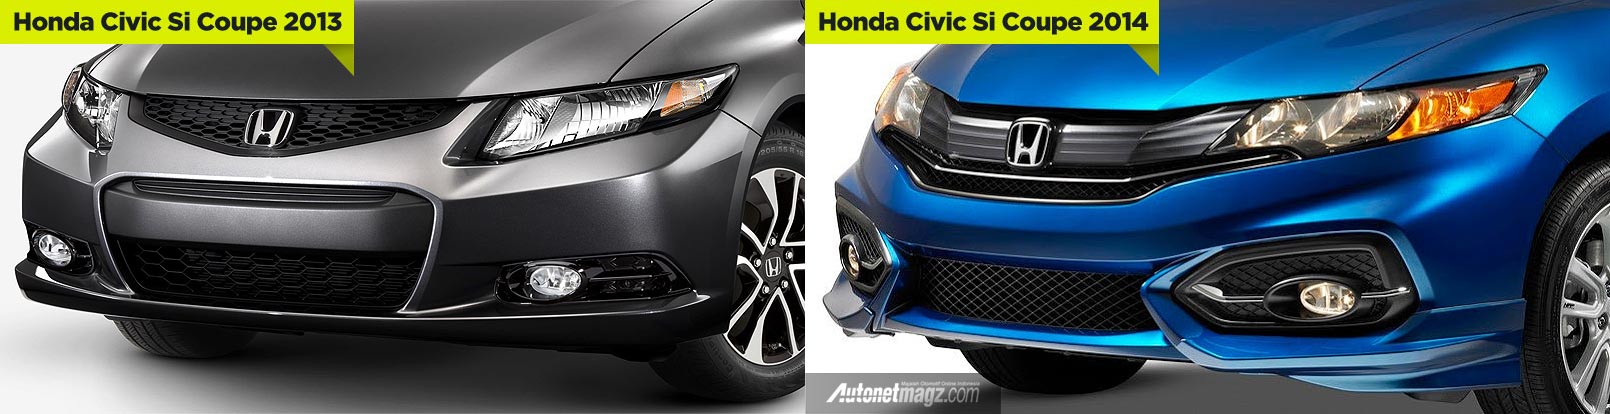 Honda, Perbedaan Honda Civic 2013 dan 2014: Honda Civic Coupe 2014 Depannya Mirip Honda Jazz Baru!